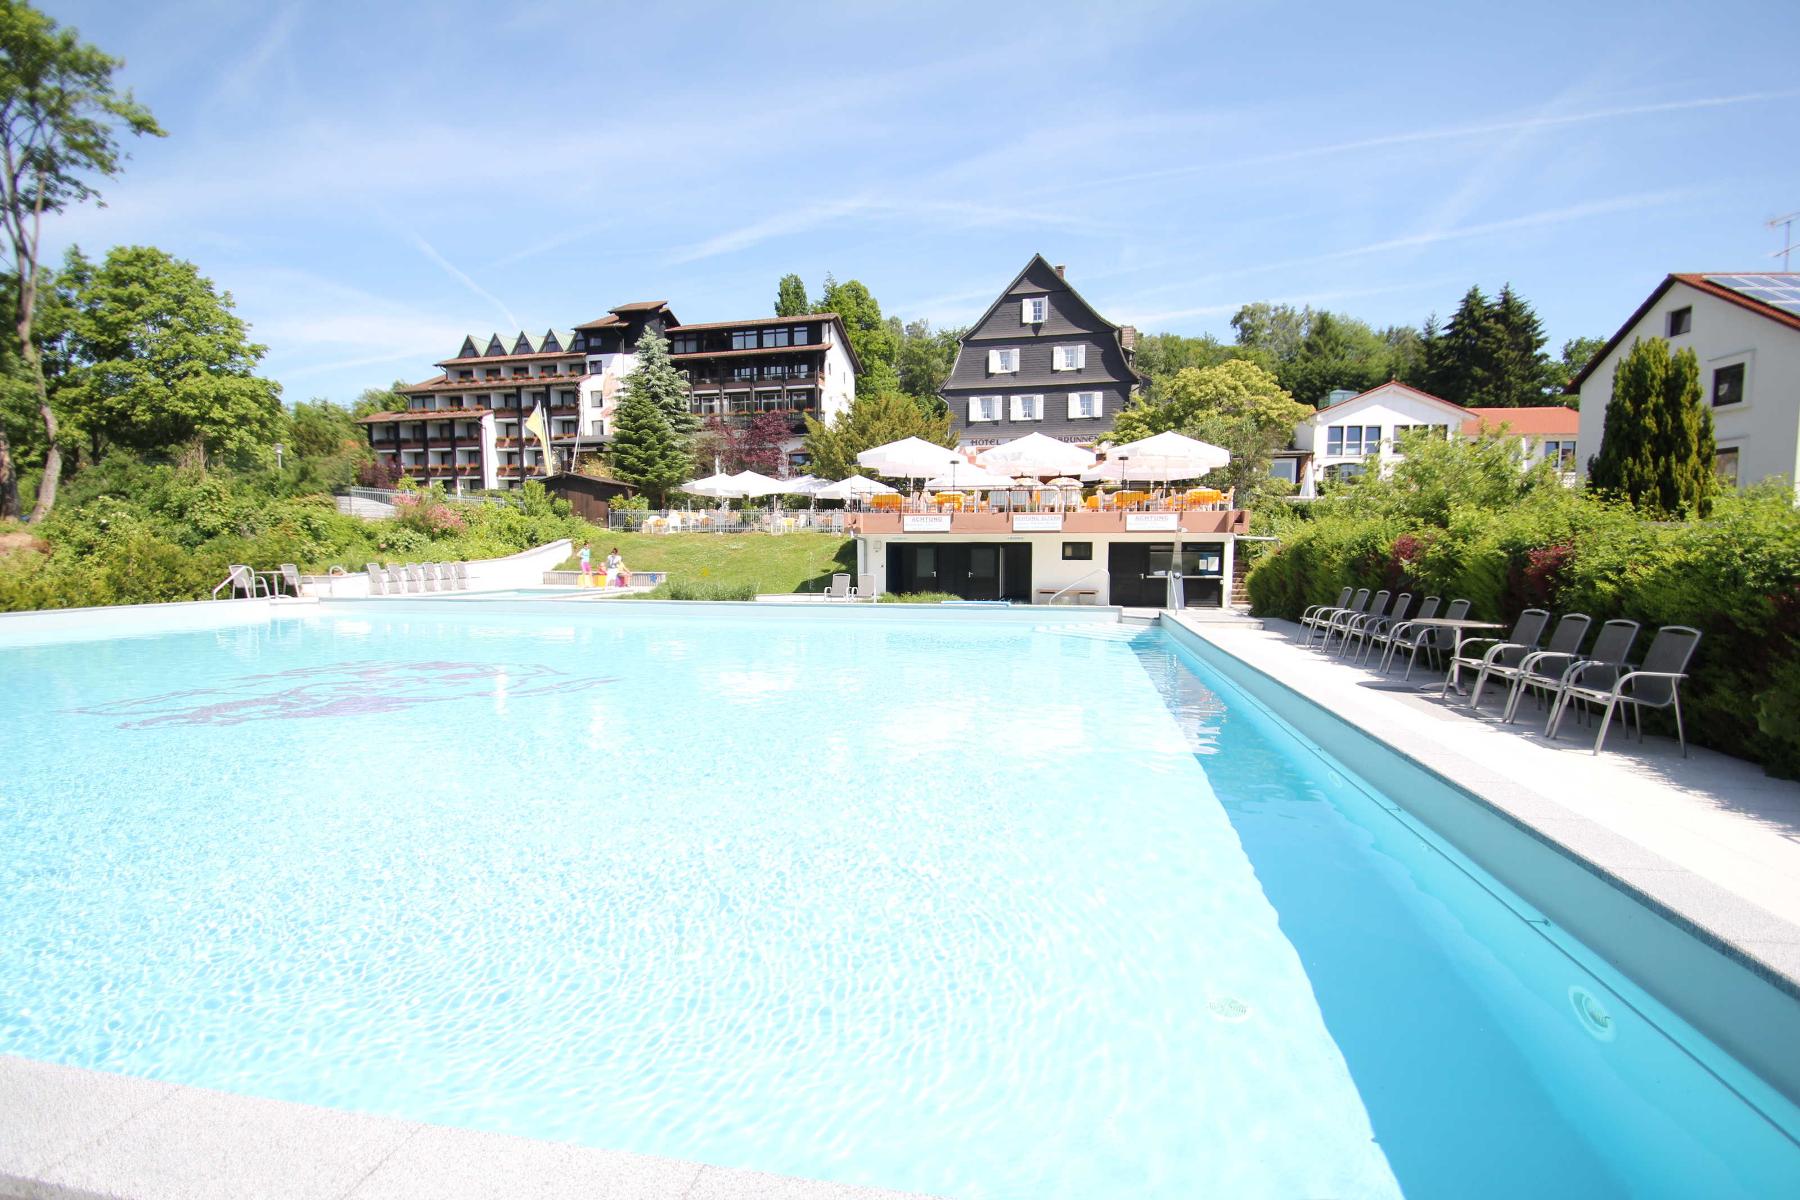 Das Haus mit den Ferienwohnungen gehört zum Ringhotel Siegfriedbrunnen (10-15min Fußweg) und verfügt über viele Ausstattungen. Die Nutzung der Freizeiteinrichtungen des Hotels ist inklusive.